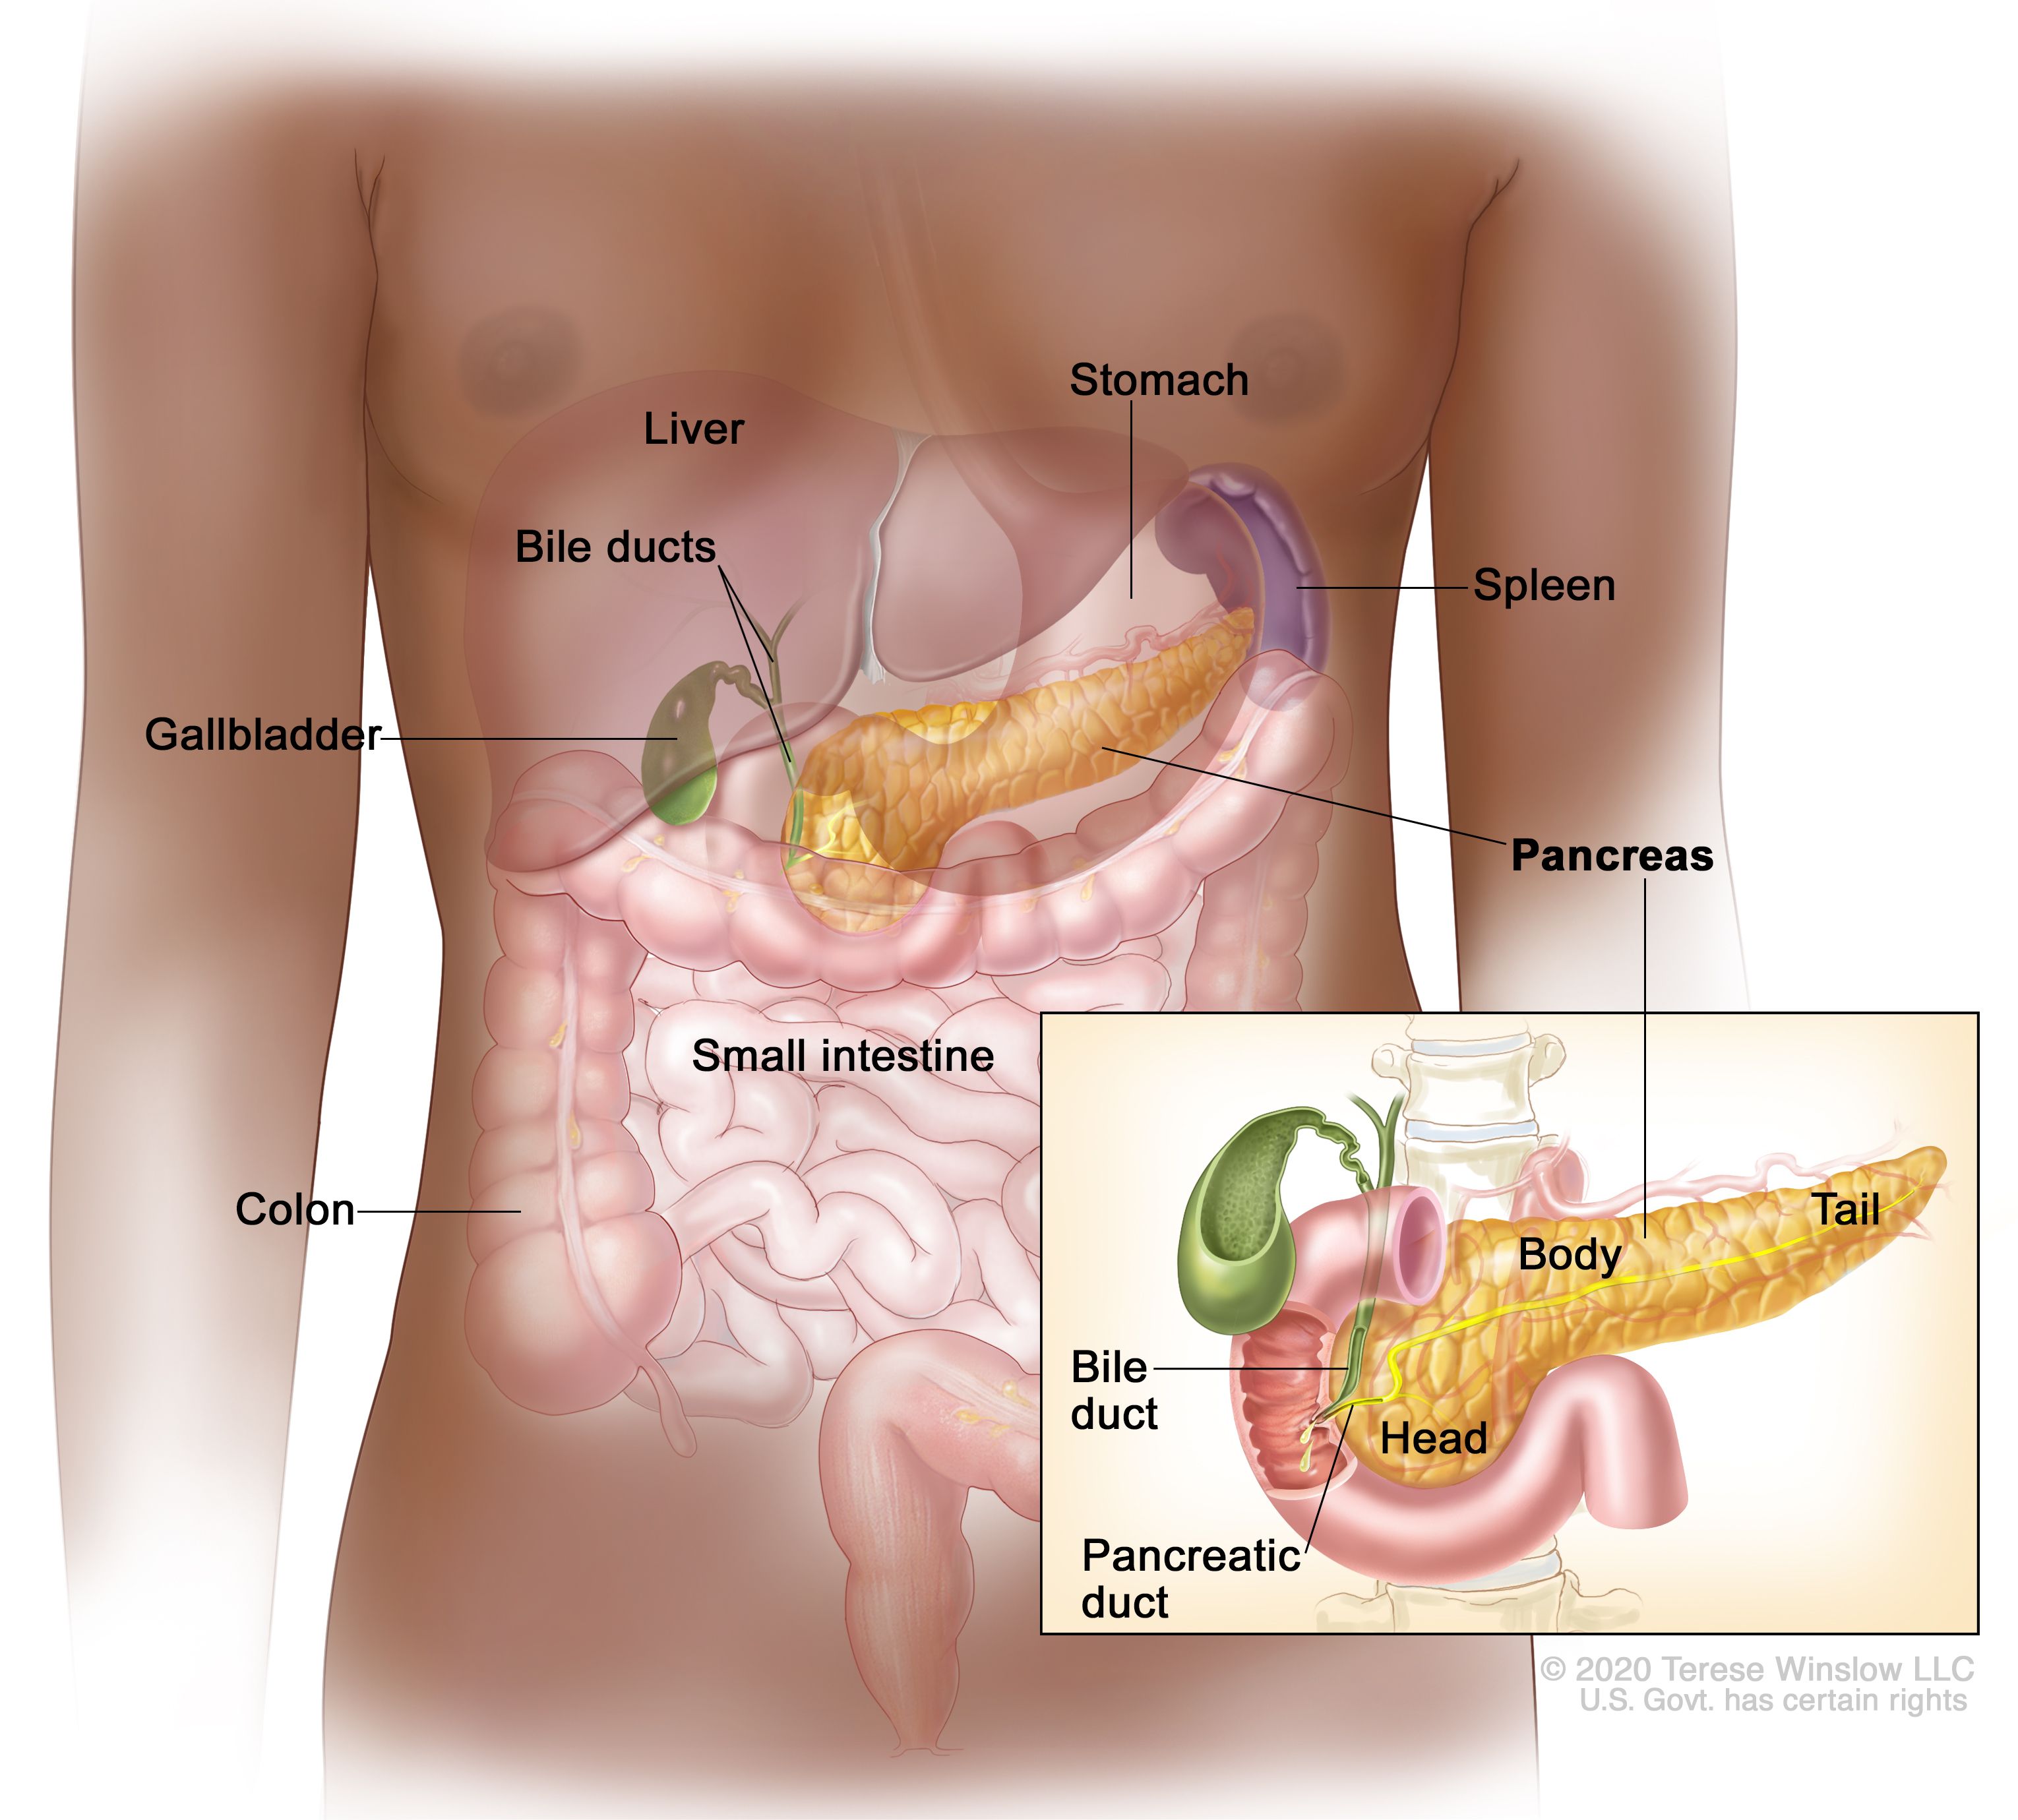 膵臓の解剖図：図は、膵臓、胃、脾臓、肝臓、胆管、胆嚢、小腸、結腸を示す。小さな図は膵臓の頭部、体部、尾部、胆管、膵管を示している。